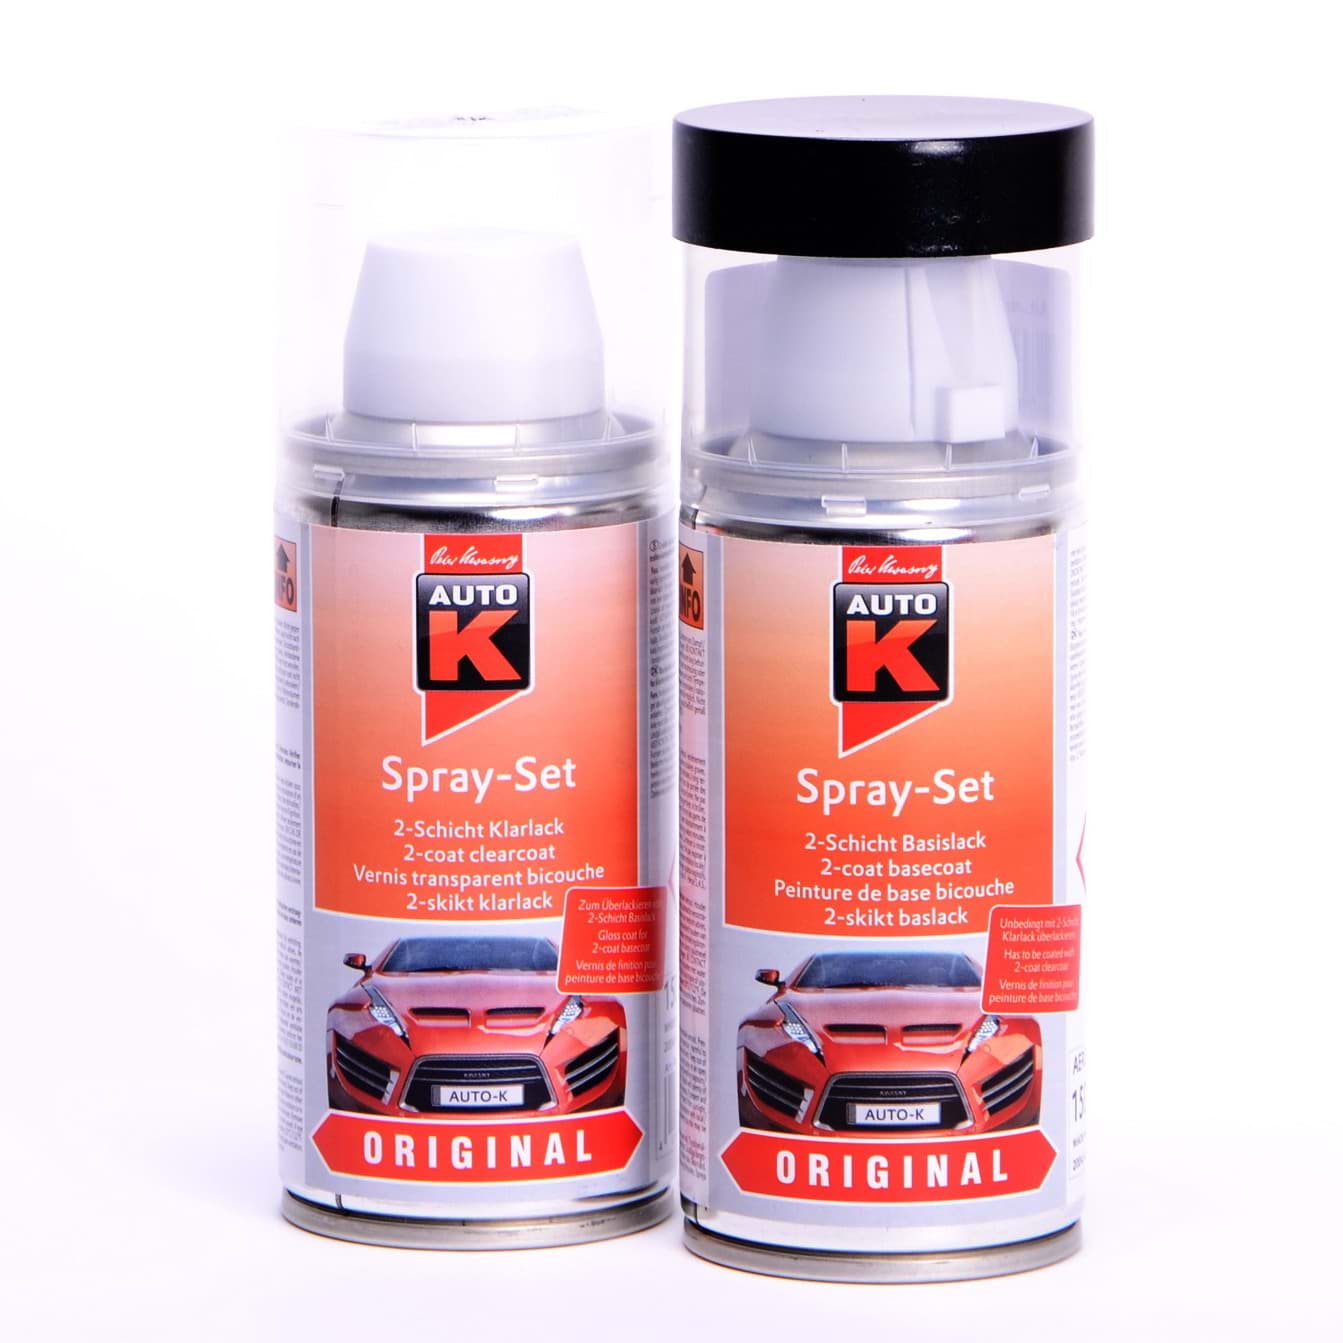 Auto-K Spray-Set Autolack für Opel 176 Argonsilber met 21477 resmi